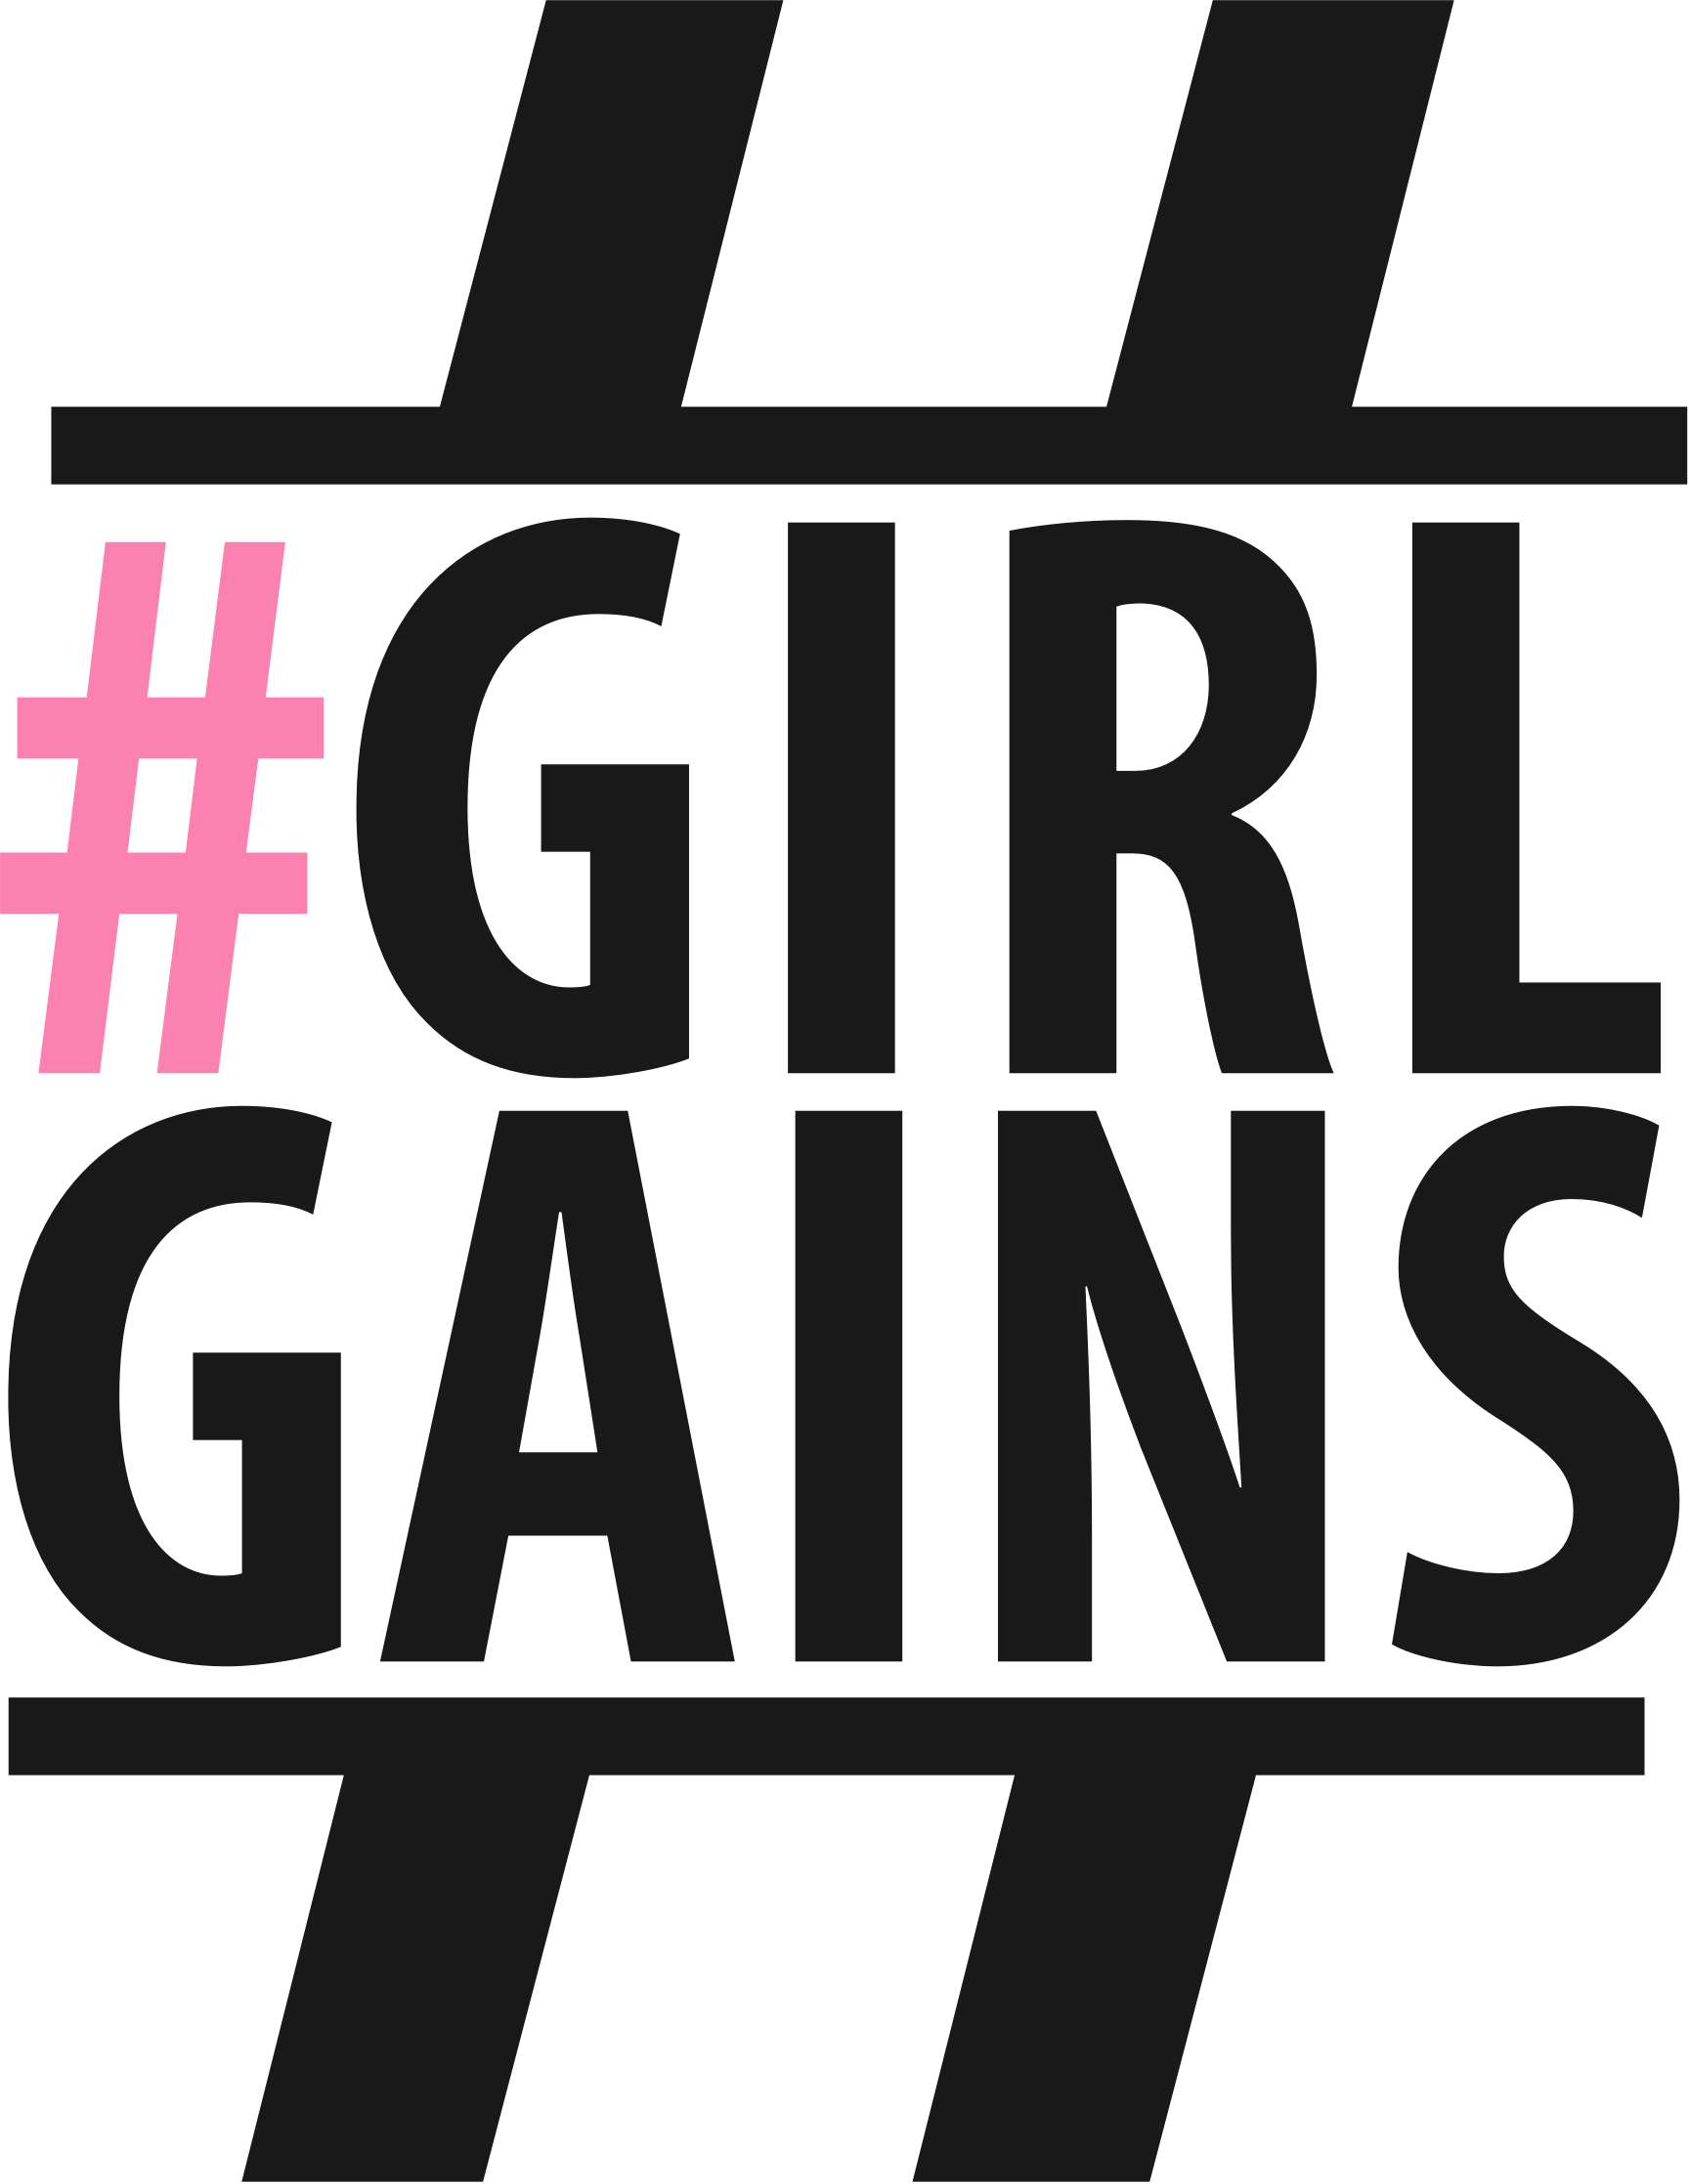 #GirlGains